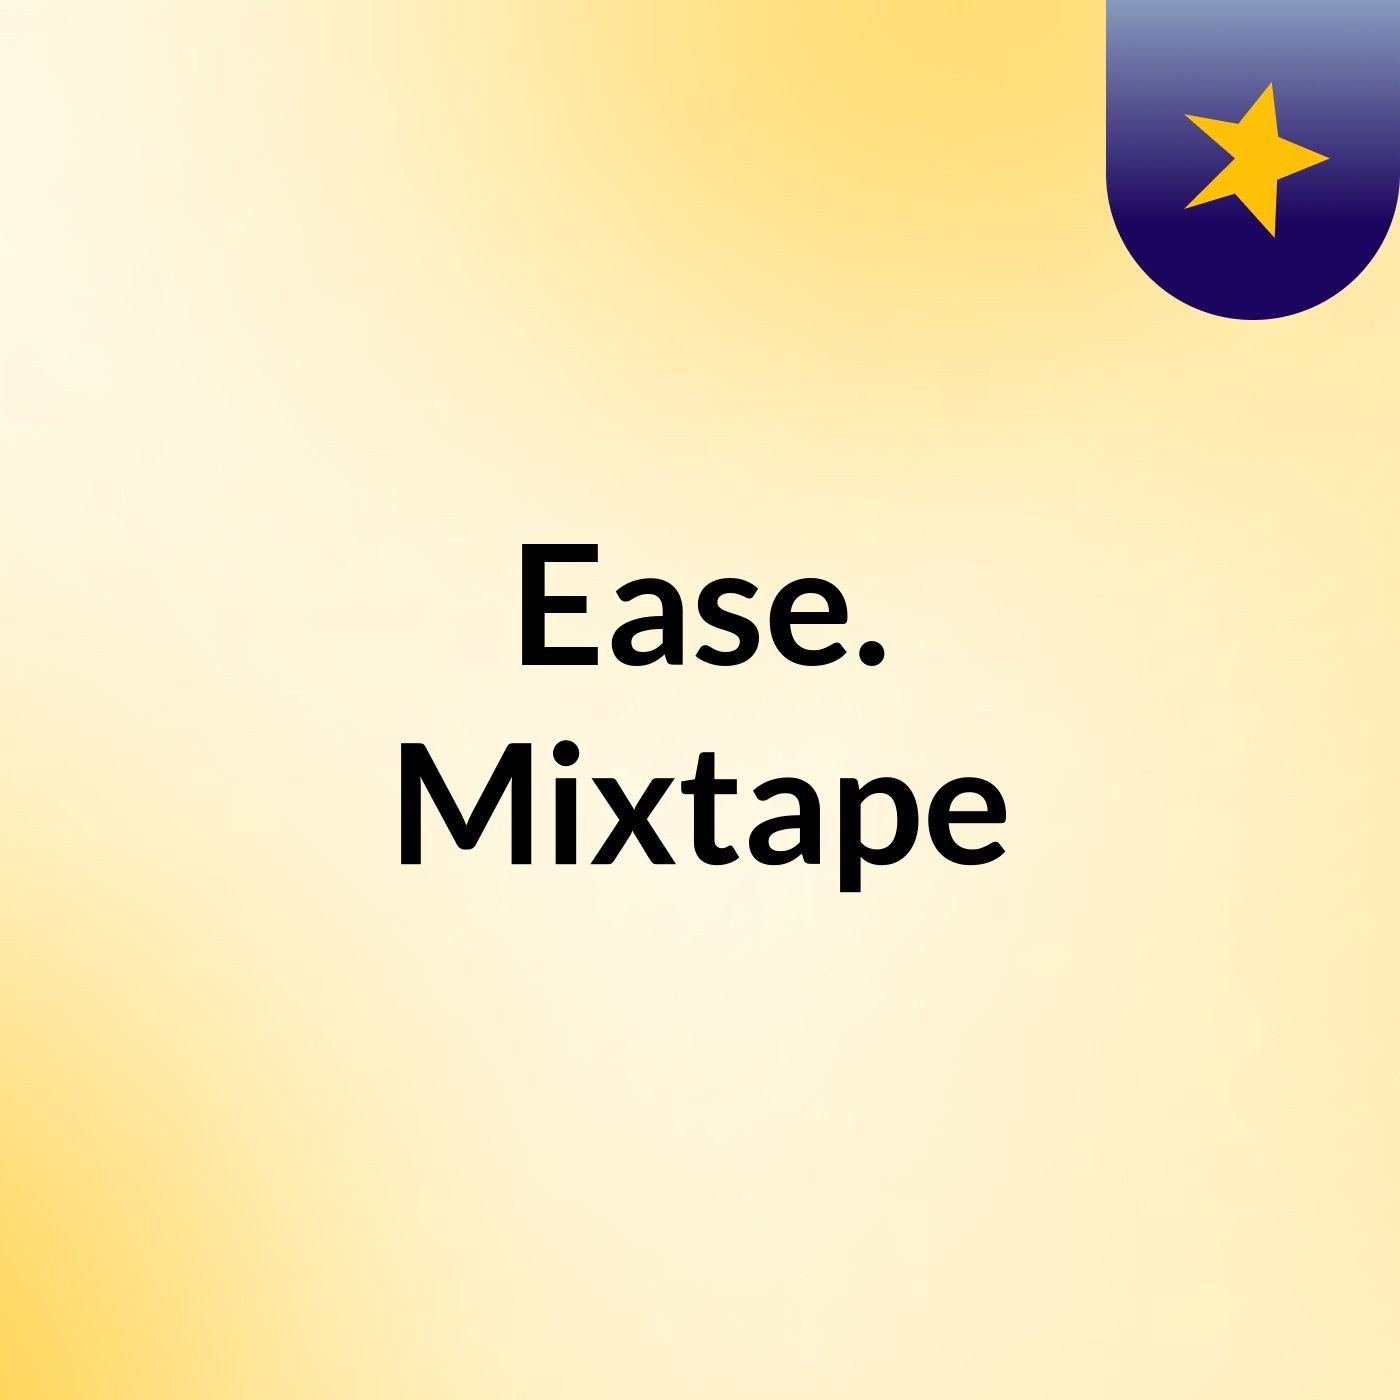 Ease.  Mixtape